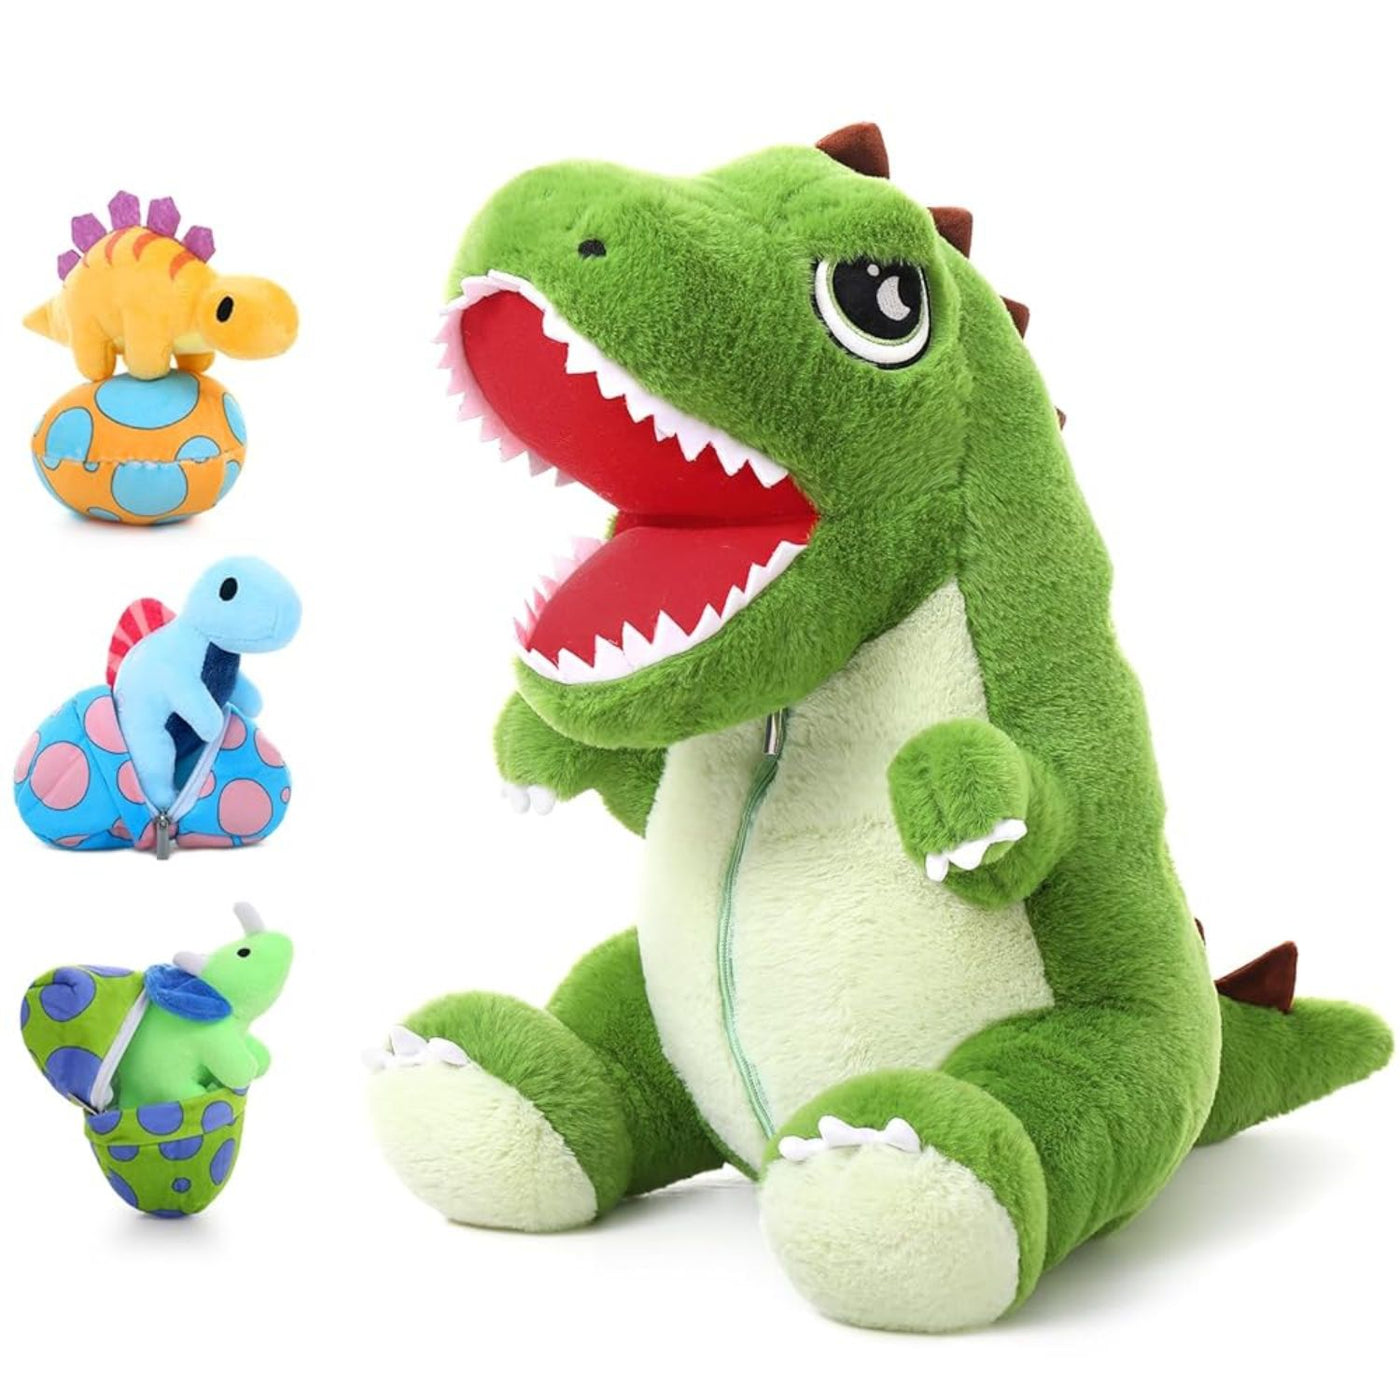 Tyrannosaurus Rex Plush Toy Set, 19.6 Inches